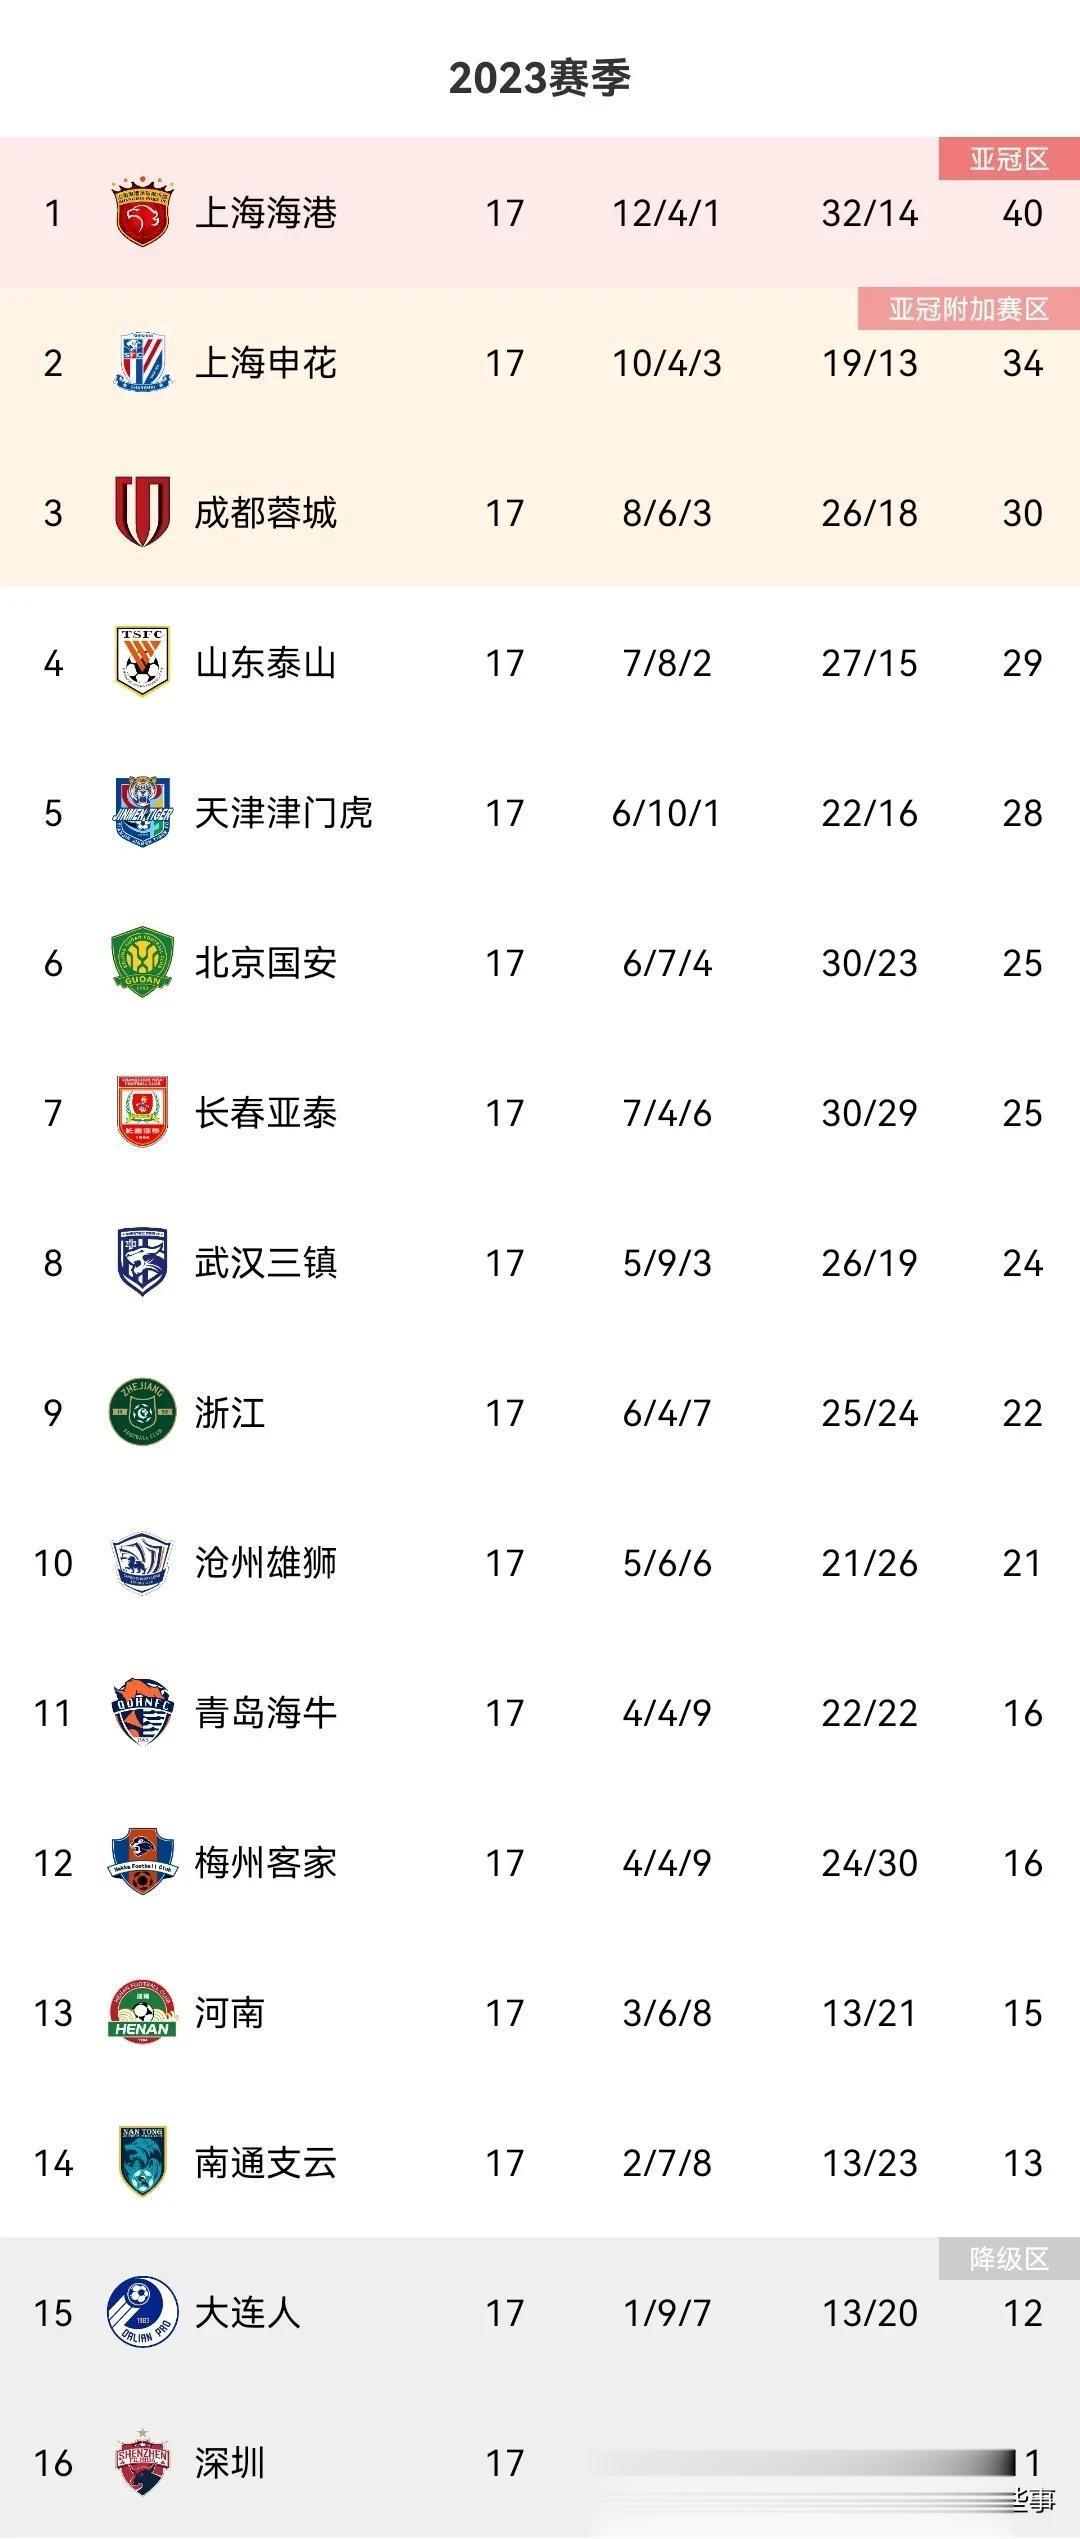 中超积分榜最新变化
上海申花2：1力克梅州客家稳居第2
本场争议不断，该判的点球